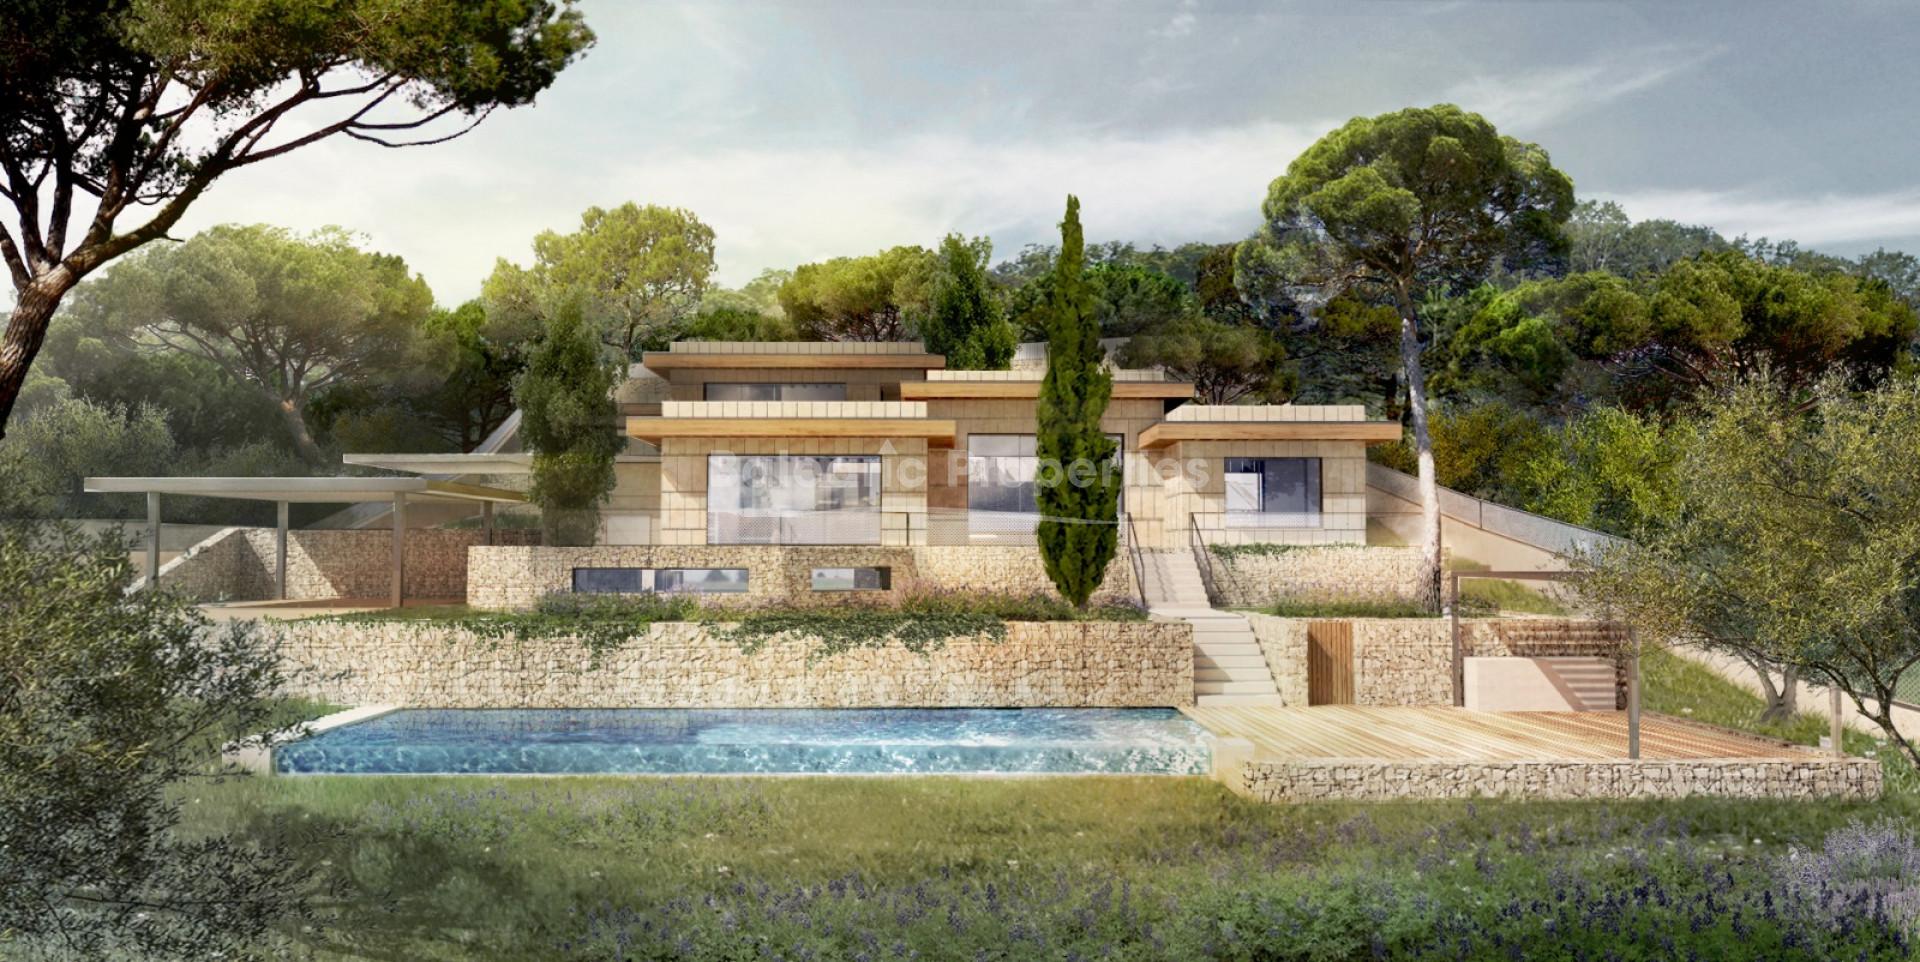 Villa project for sale beside the golf course in Santa Ponsa, Mallorca